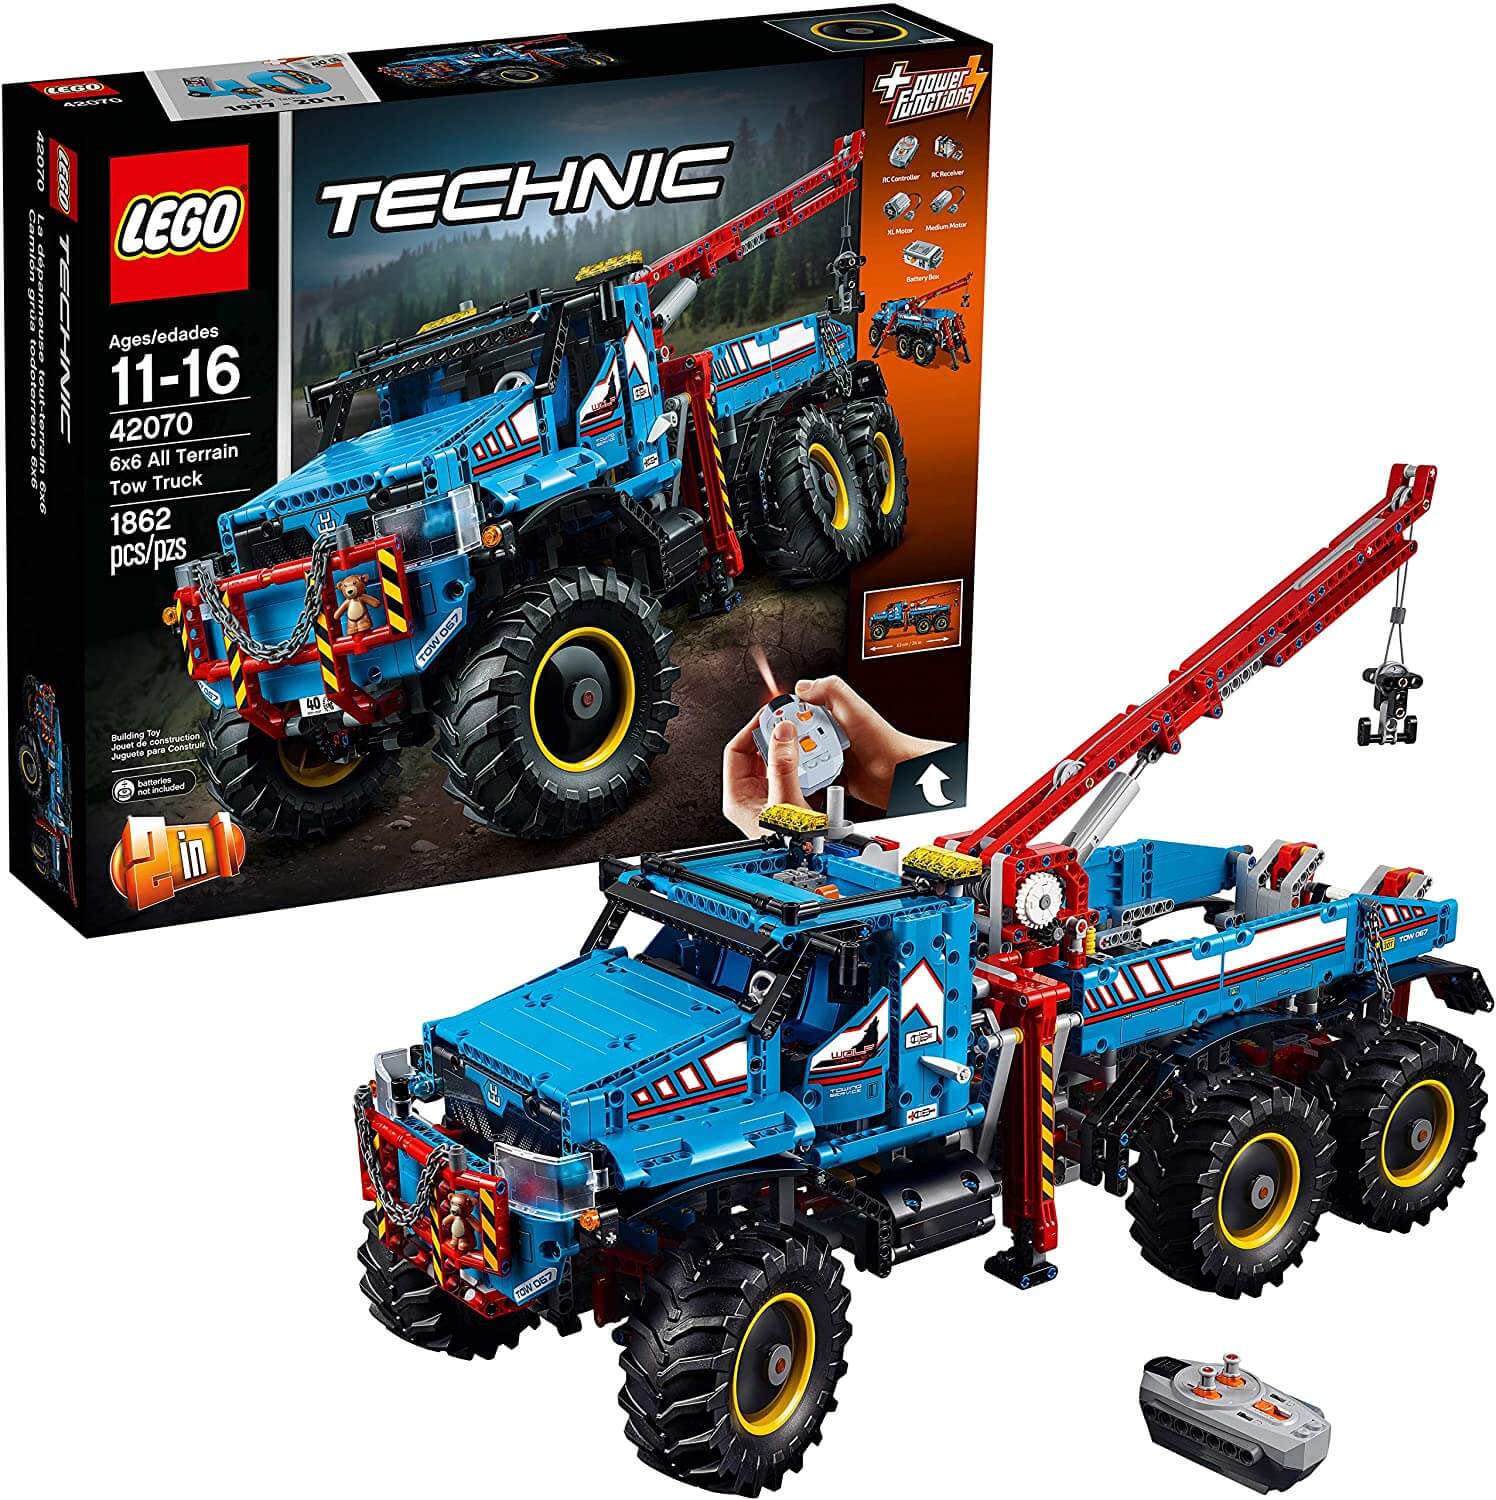 Конструктор LEGO 42070 Technic - Аварийный внедорожник 6х6 конструктор внедорожник lego technic control 958дет 42099 с 11лет